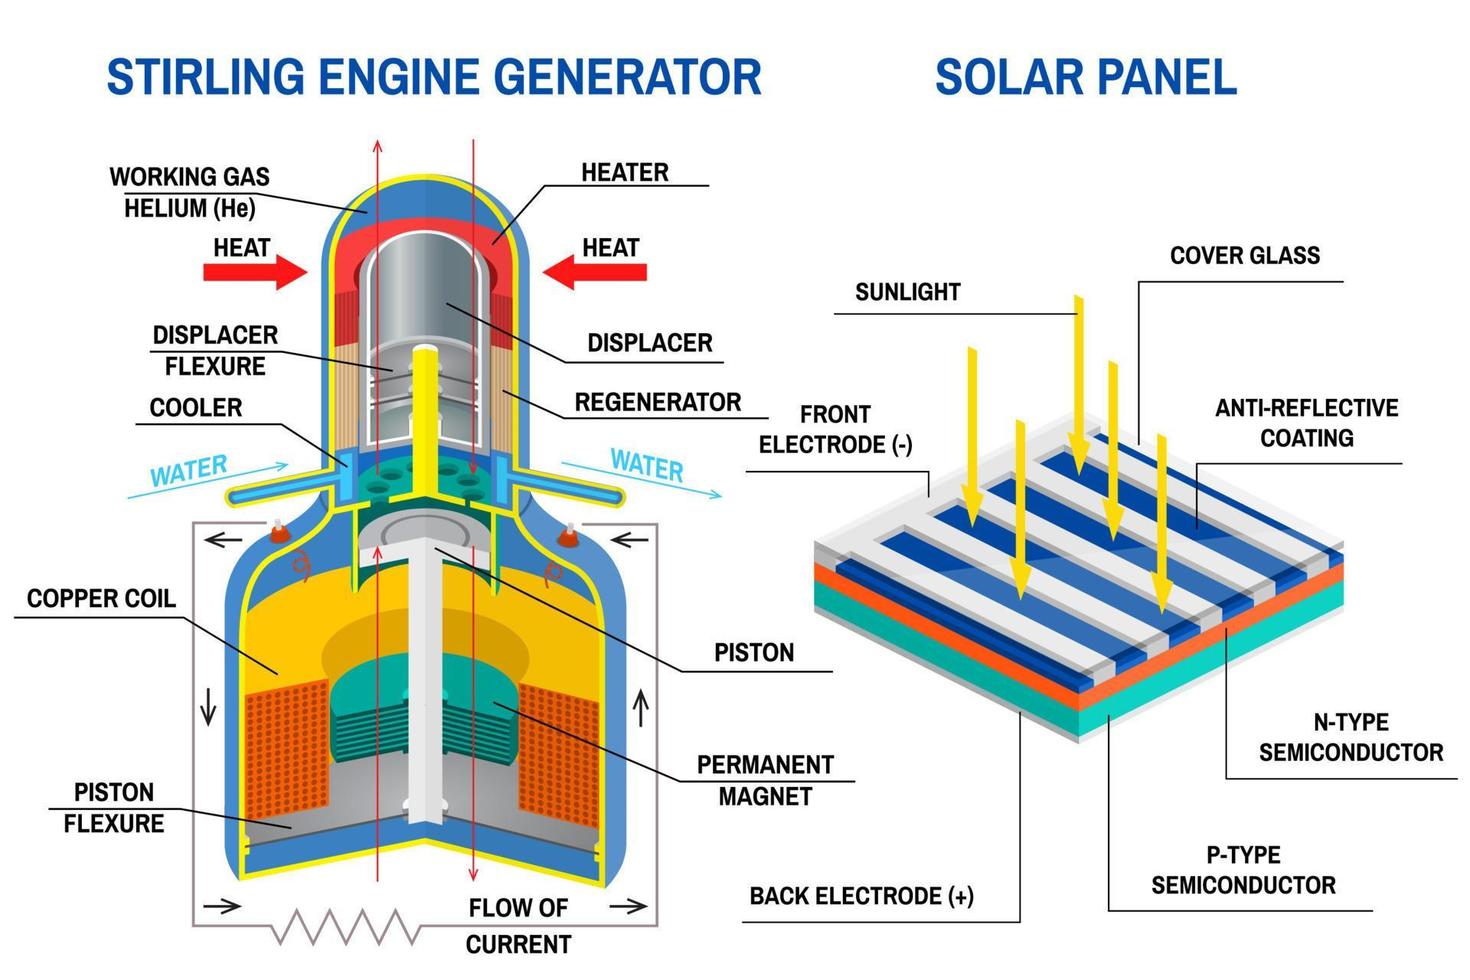 generatore motore stirling e diagramma del pannello solare. vettore. dispositivo che riceve energia dai cicli termodinamici, dispositivo che converte la luce in elettricità. diagramma di un sistema off-grid. vettore